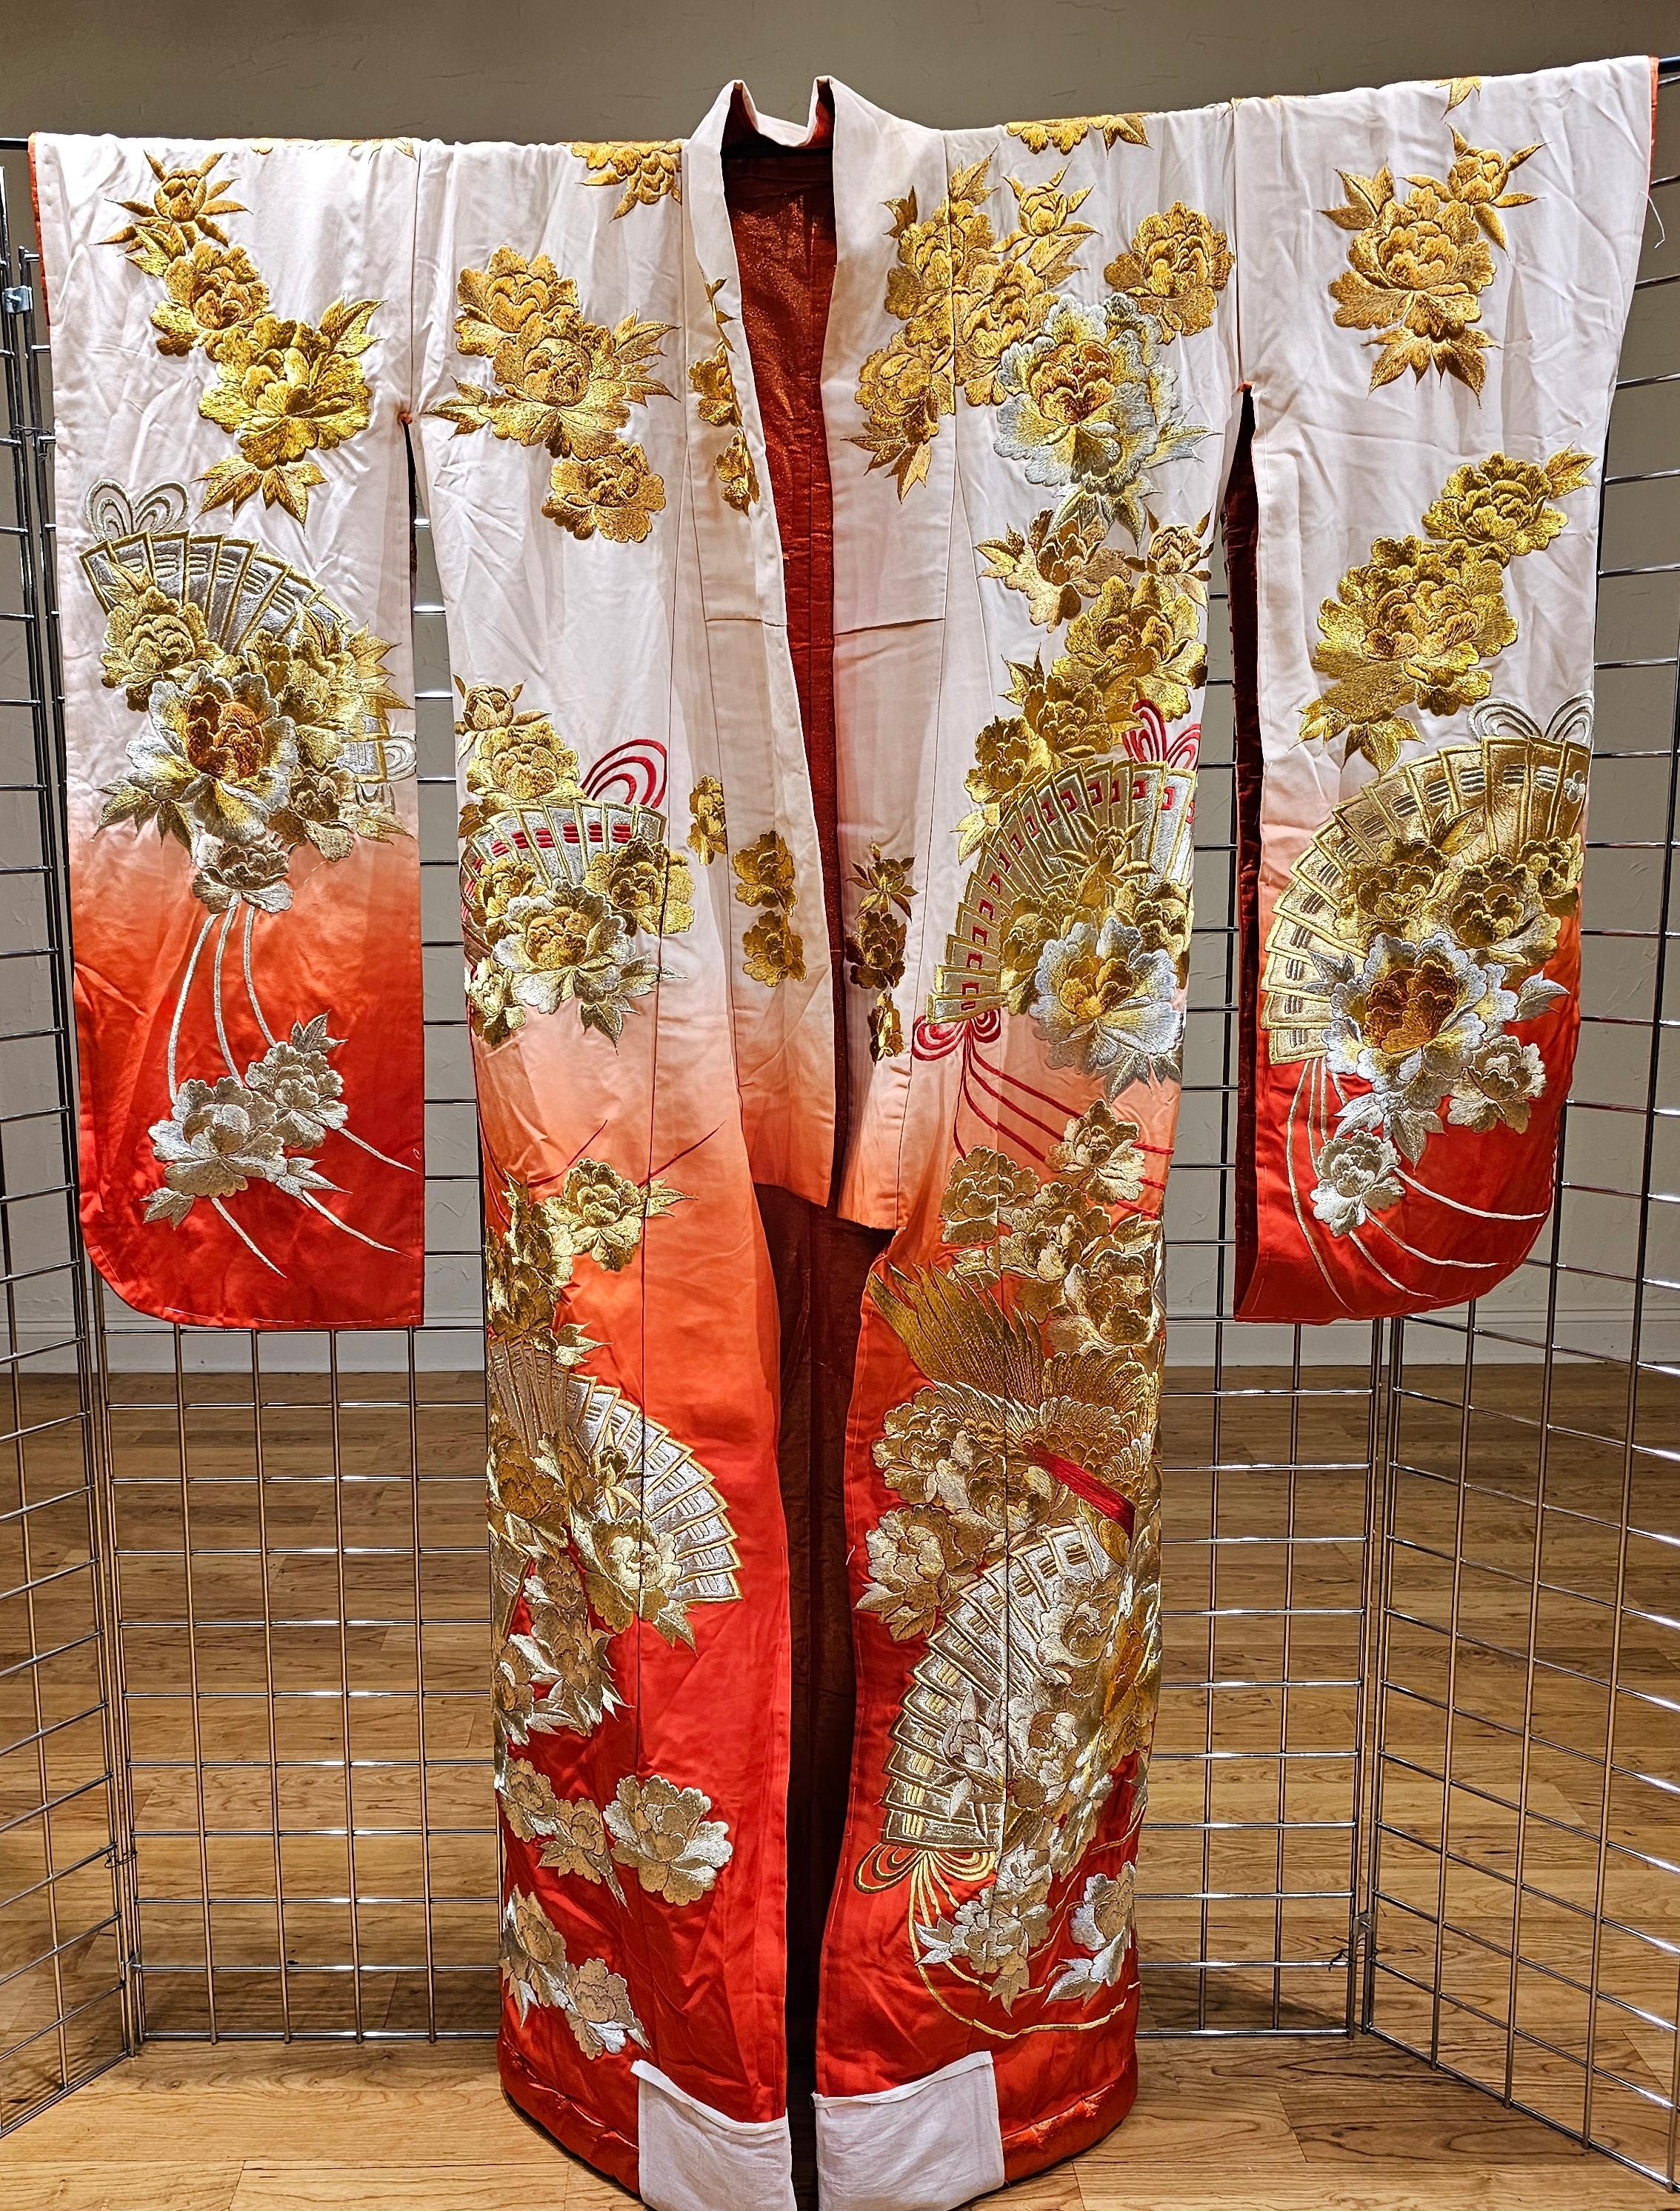 Kimono/Robe de mariage Uchikake pour cérémonie, d'une grande beauté, datant de la fin de la période Meiji à la période Taisho, 1910-1930. Ce vêtement de dessus de la mariée est d'un blanc et d'une  La couleur rouge est caractérisée par une broderie